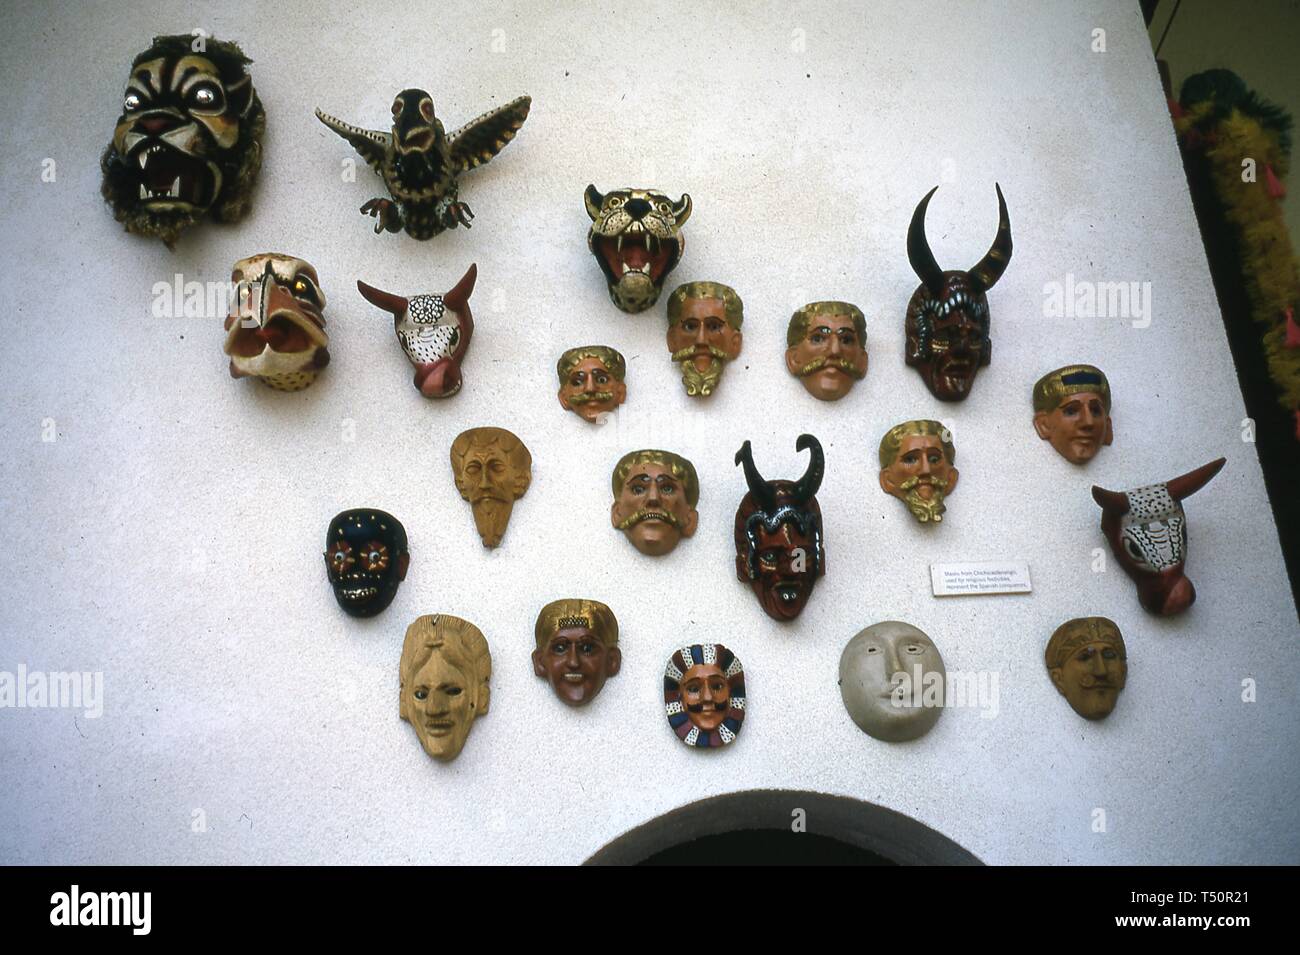 Vista de una colección de figuras antropomorfas zoomorfas y máscaras montado en una pared como parte de una pantalla asociada con el New York Worlds Fair, Flushing Meadows Park, Queens, Nueva York, junio de 1964. () Foto de stock